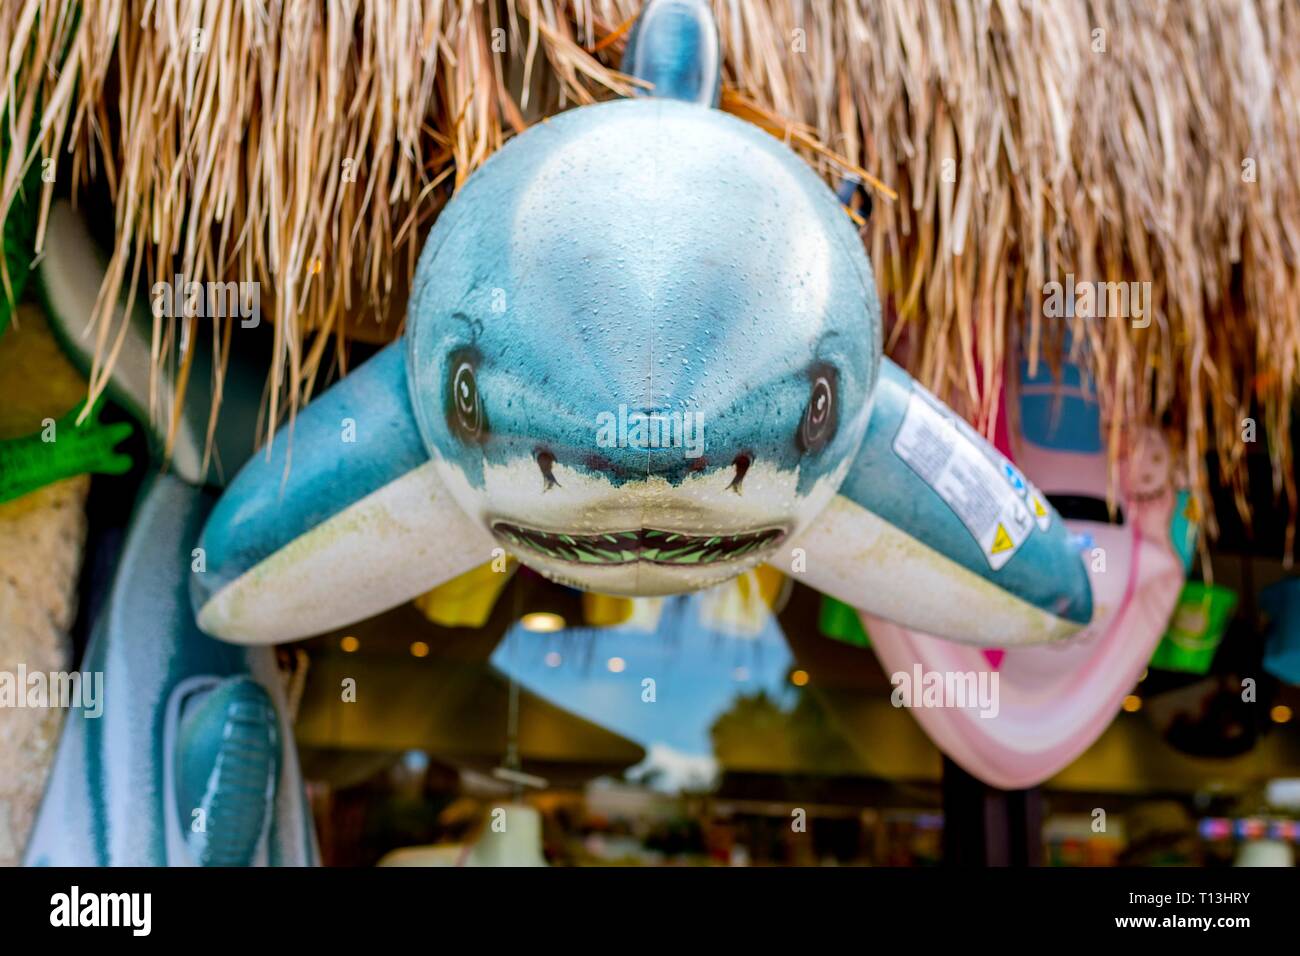 Die hellen und farbenfrohen great white shark aufblasbare Spielzeuge außerhalb einen Souvenir Shop in einem Beach Resort in der Karibik an der Riviera Maya in Mexiko. Stockfoto